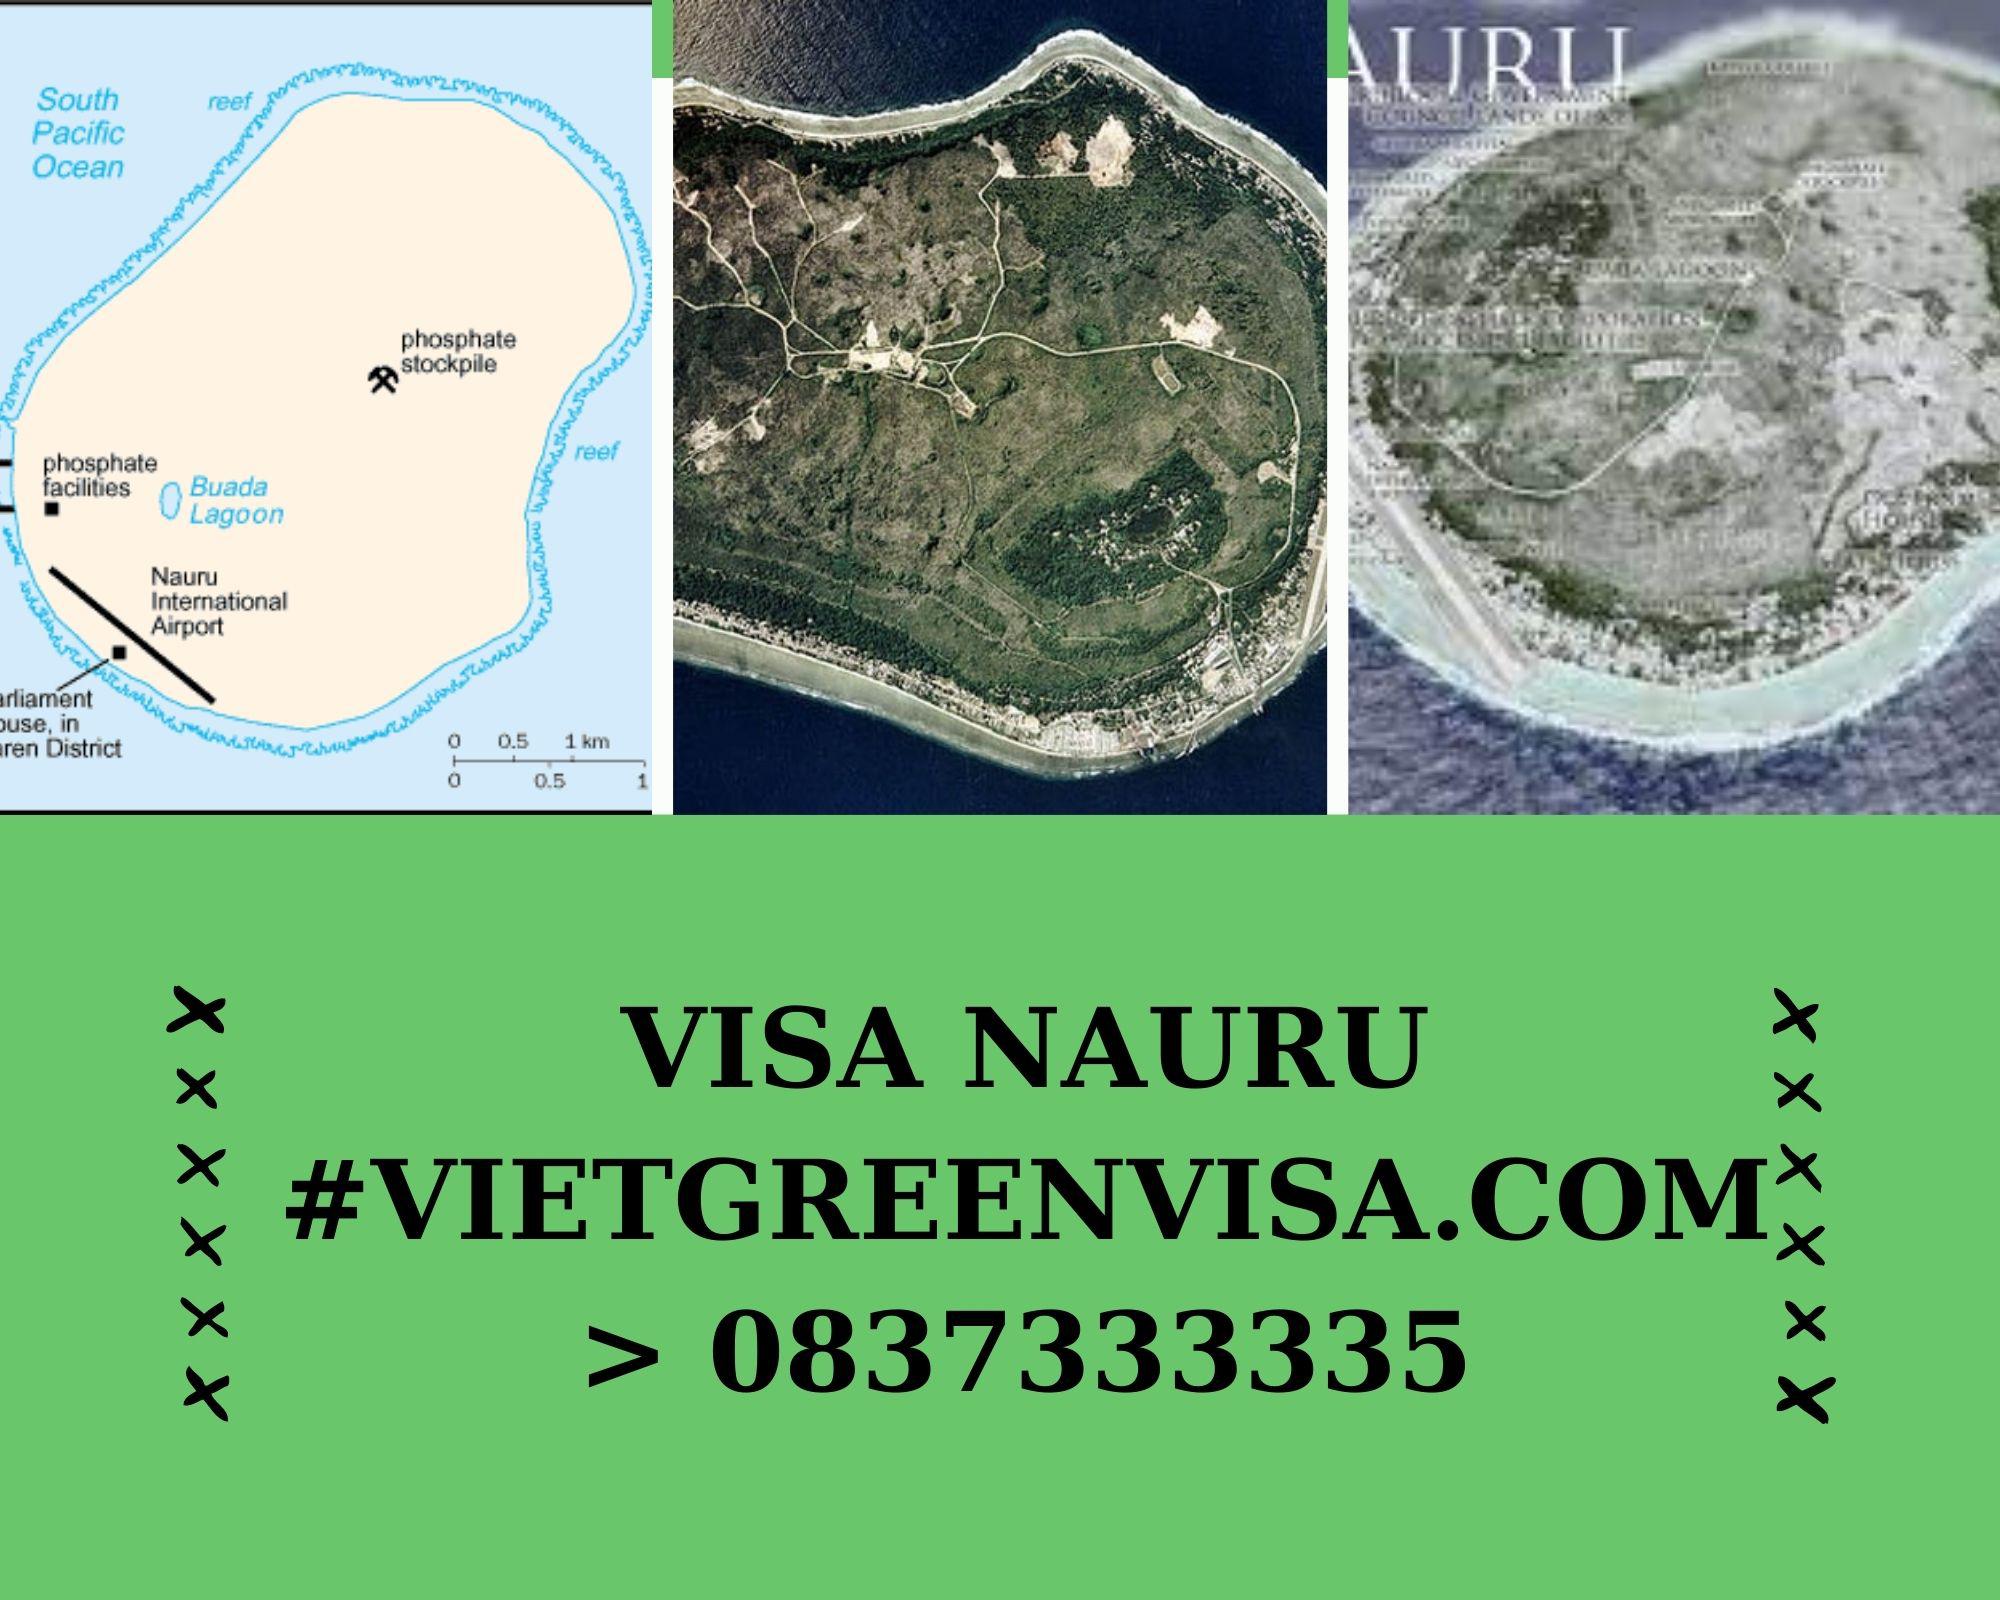 Làm Visa Nauru thăm thân uy tín, nhanh chóng, giá rẻ